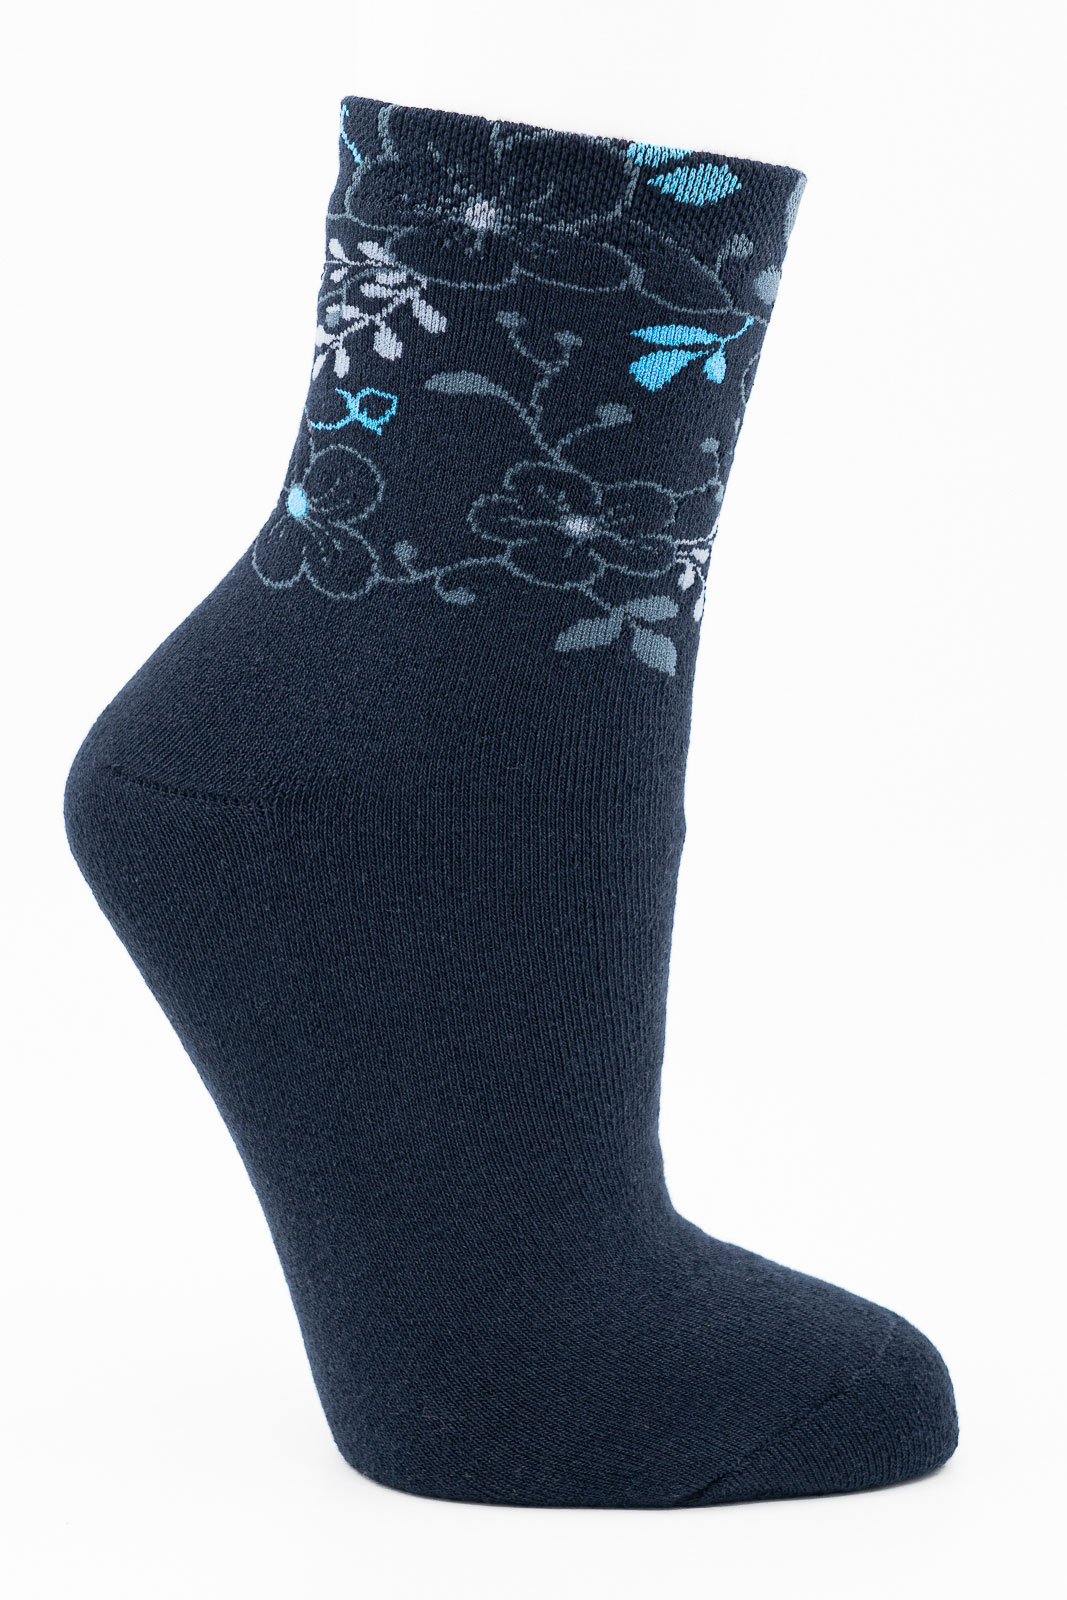 Зимние махровые носки Гамма С511 Цветы